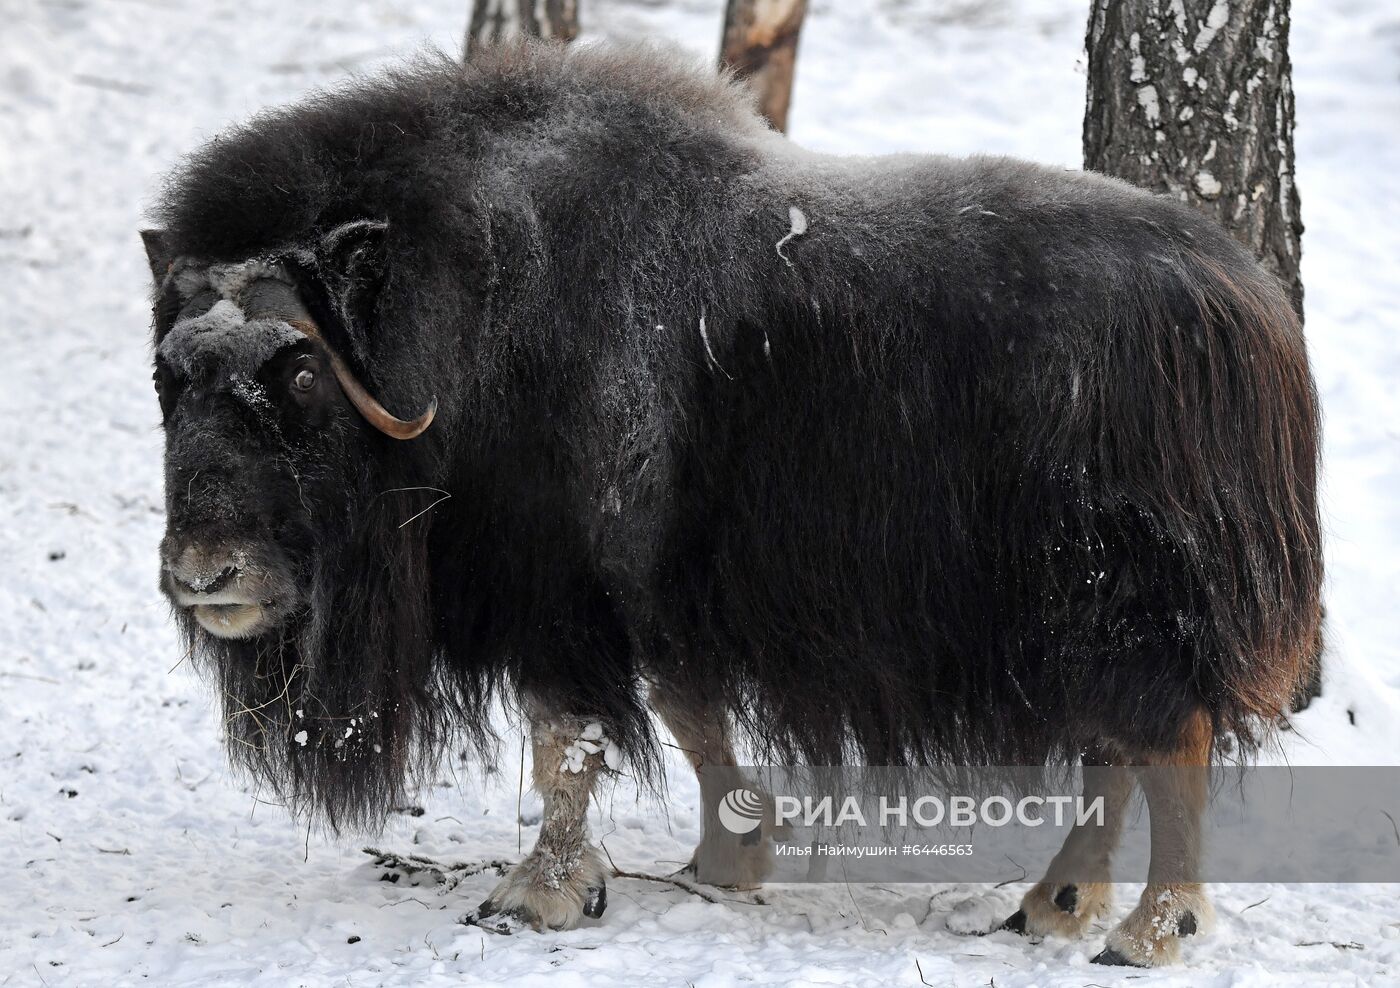 Зимовка животных в парке "Роев Ручей" в Красноярске